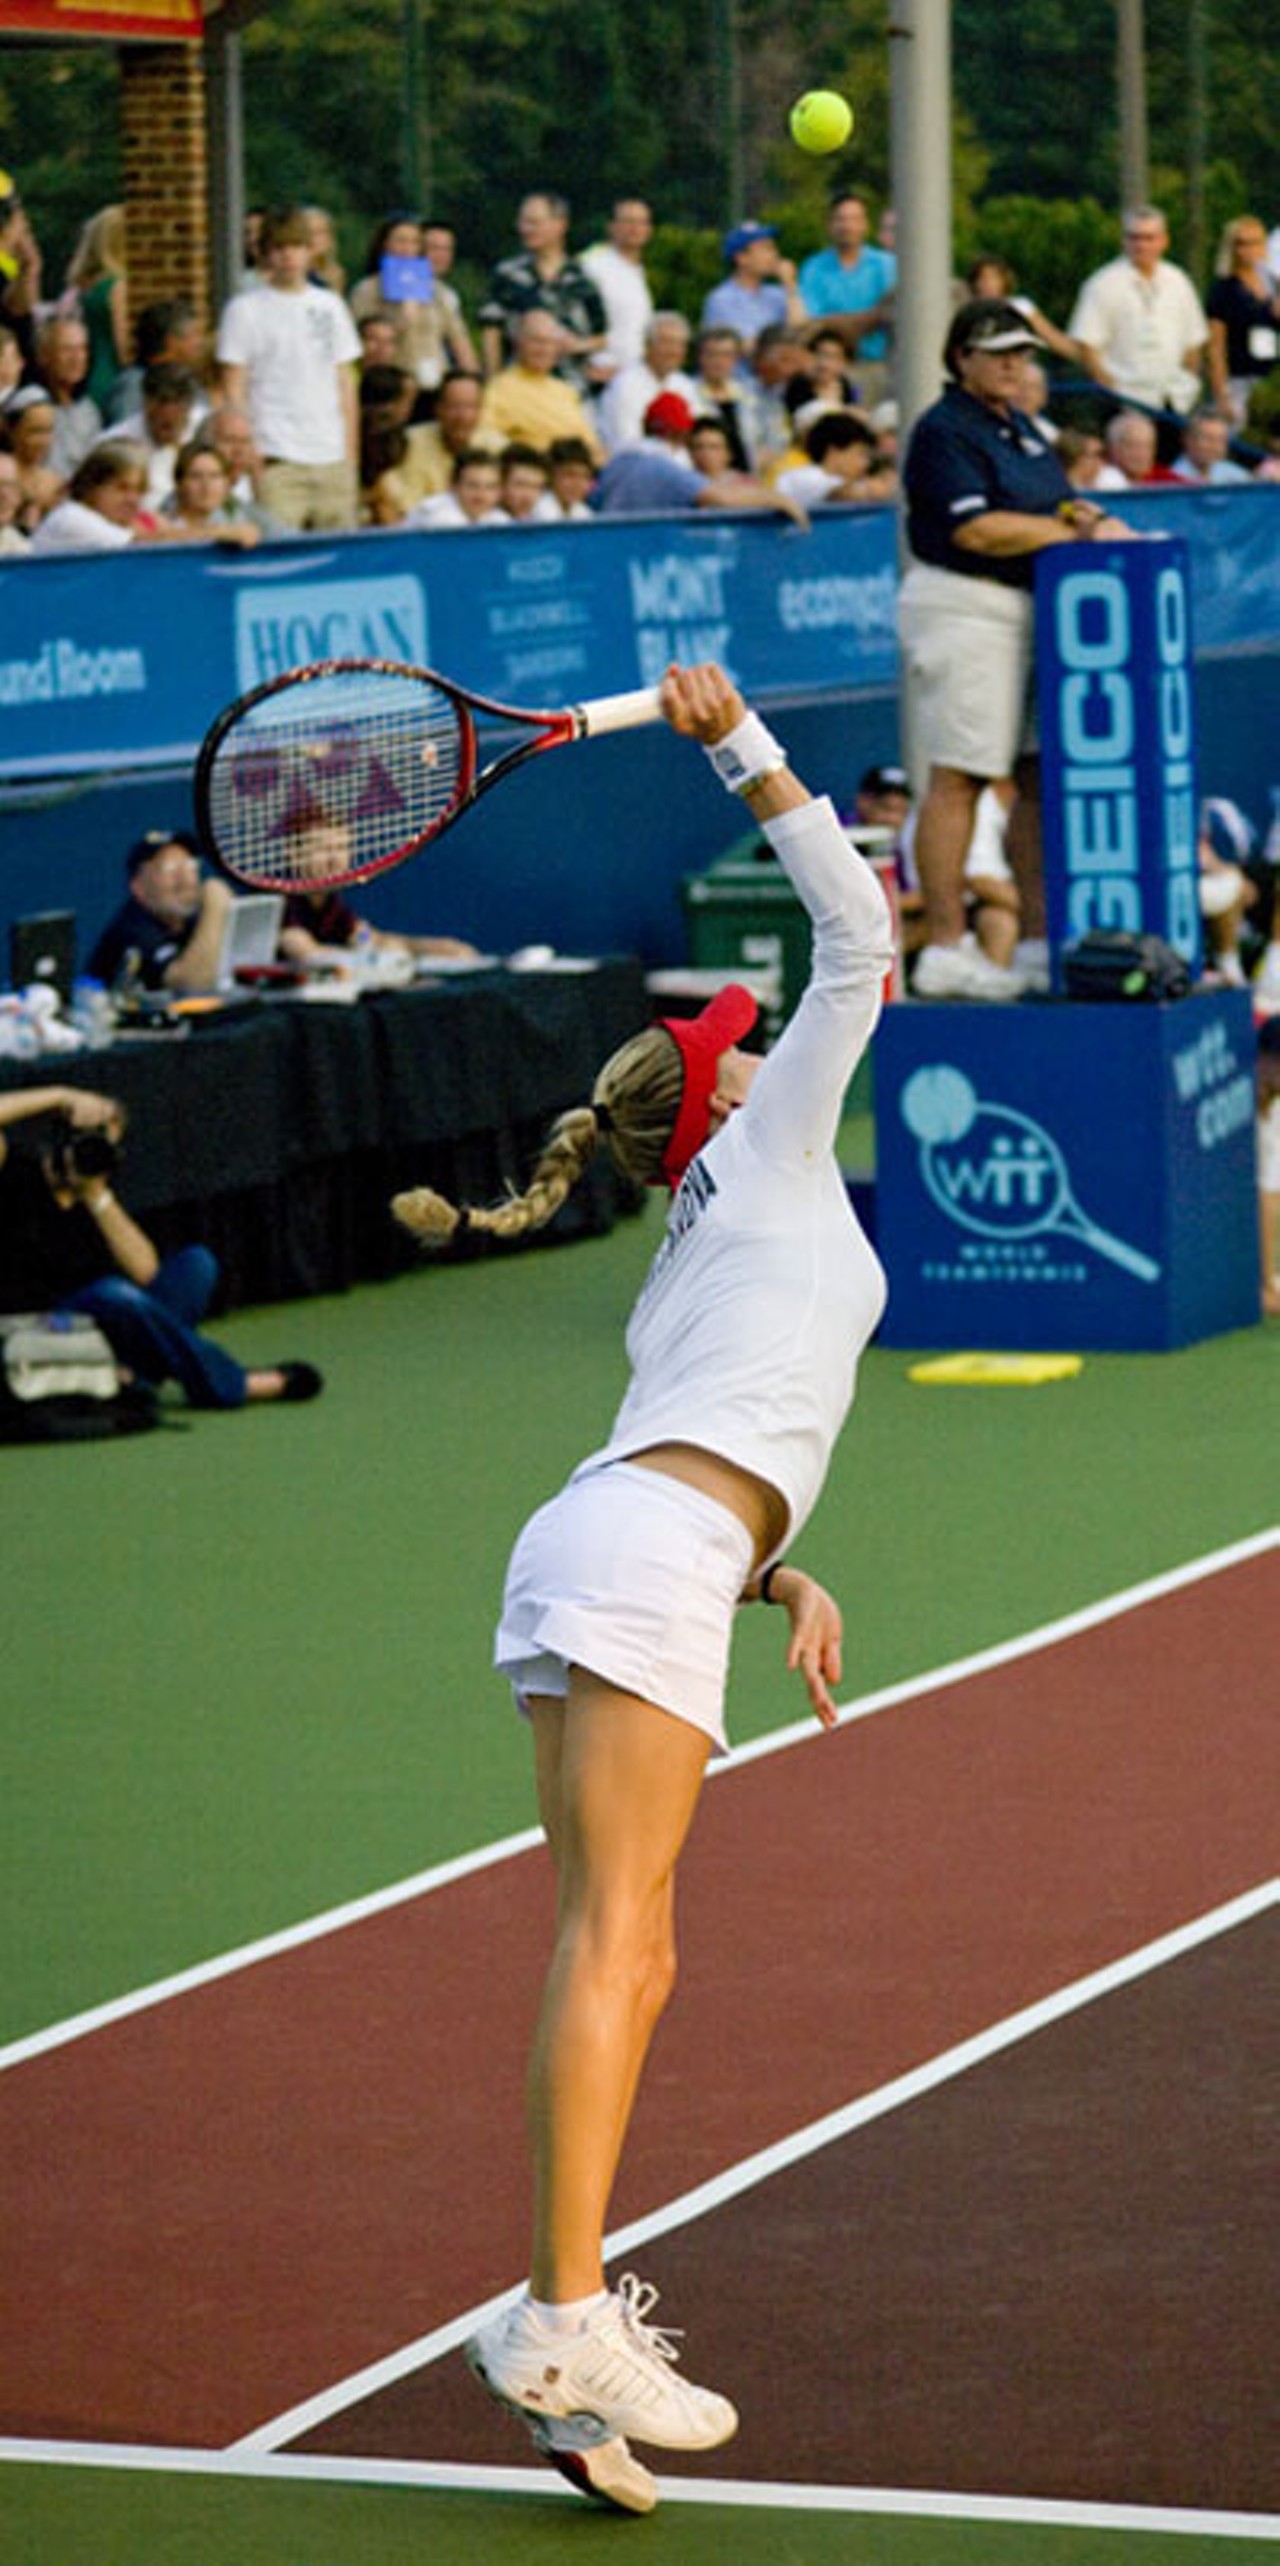 Anna Kournikova: Love life of tennis star was next level